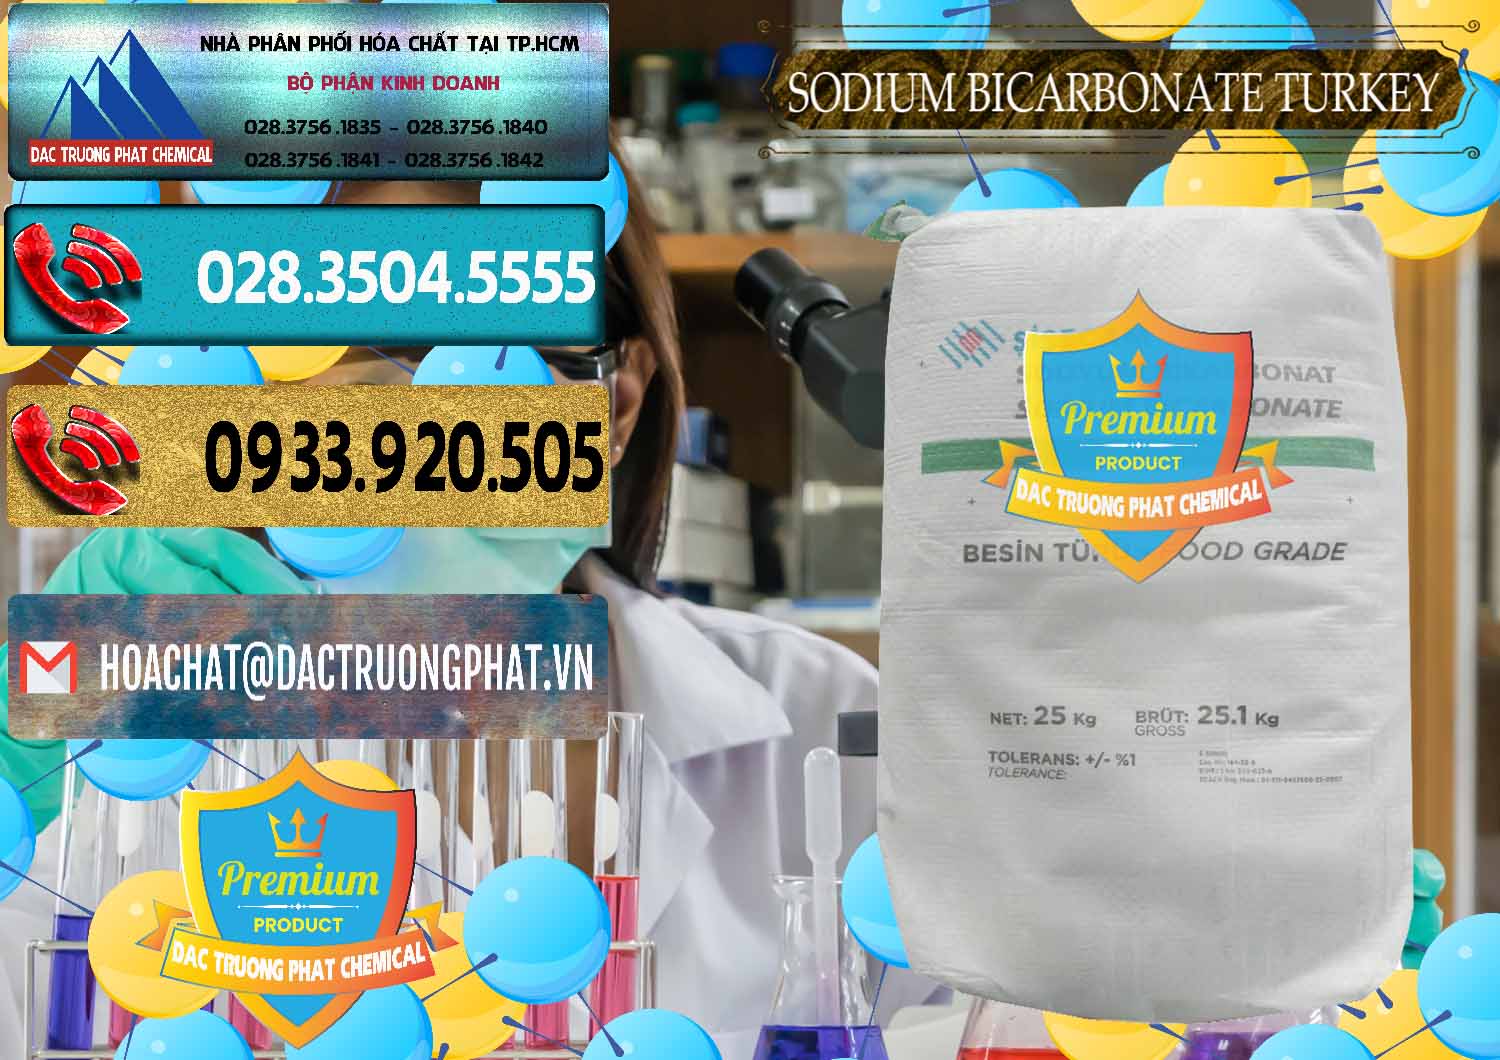 Cty chuyên bán & cung cấp Sodium Bicarbonate – Bicar NaHCO3 Food Grade Thổ Nhĩ Kỳ Turkey - 0219 - Chuyên bán & cung cấp hóa chất tại TP.HCM - hoachatdetnhuom.com